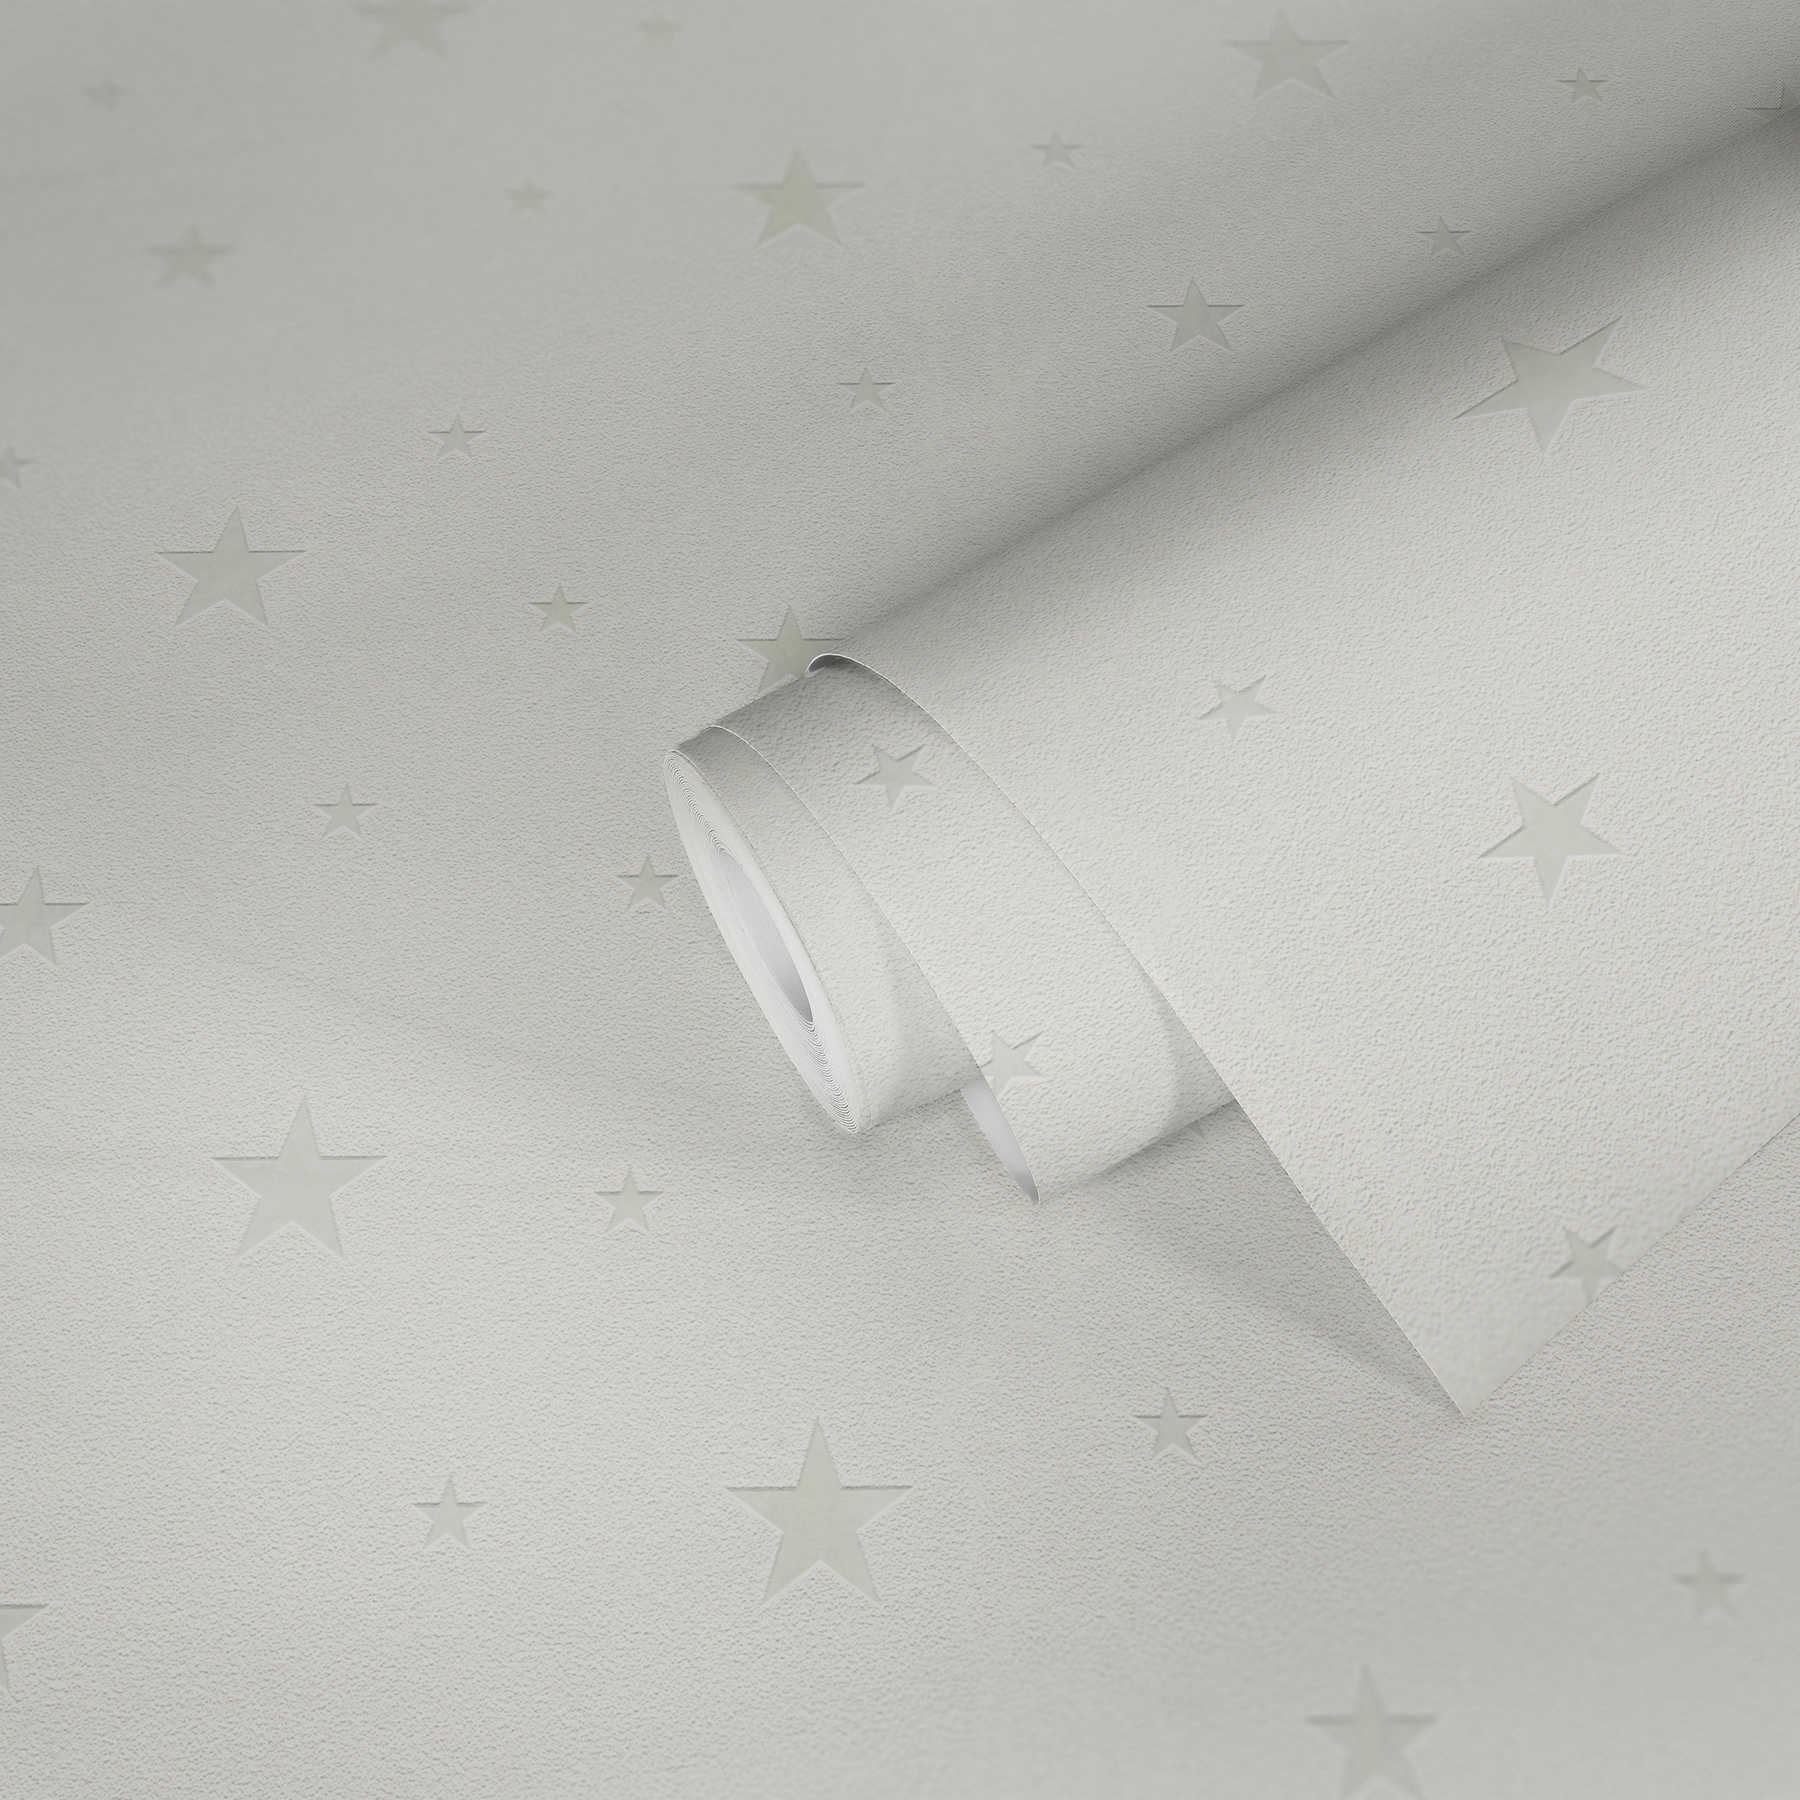             Leuchteffekt Kinderzimmertapete mit nachleuchtenden Sternen – Weiß
        